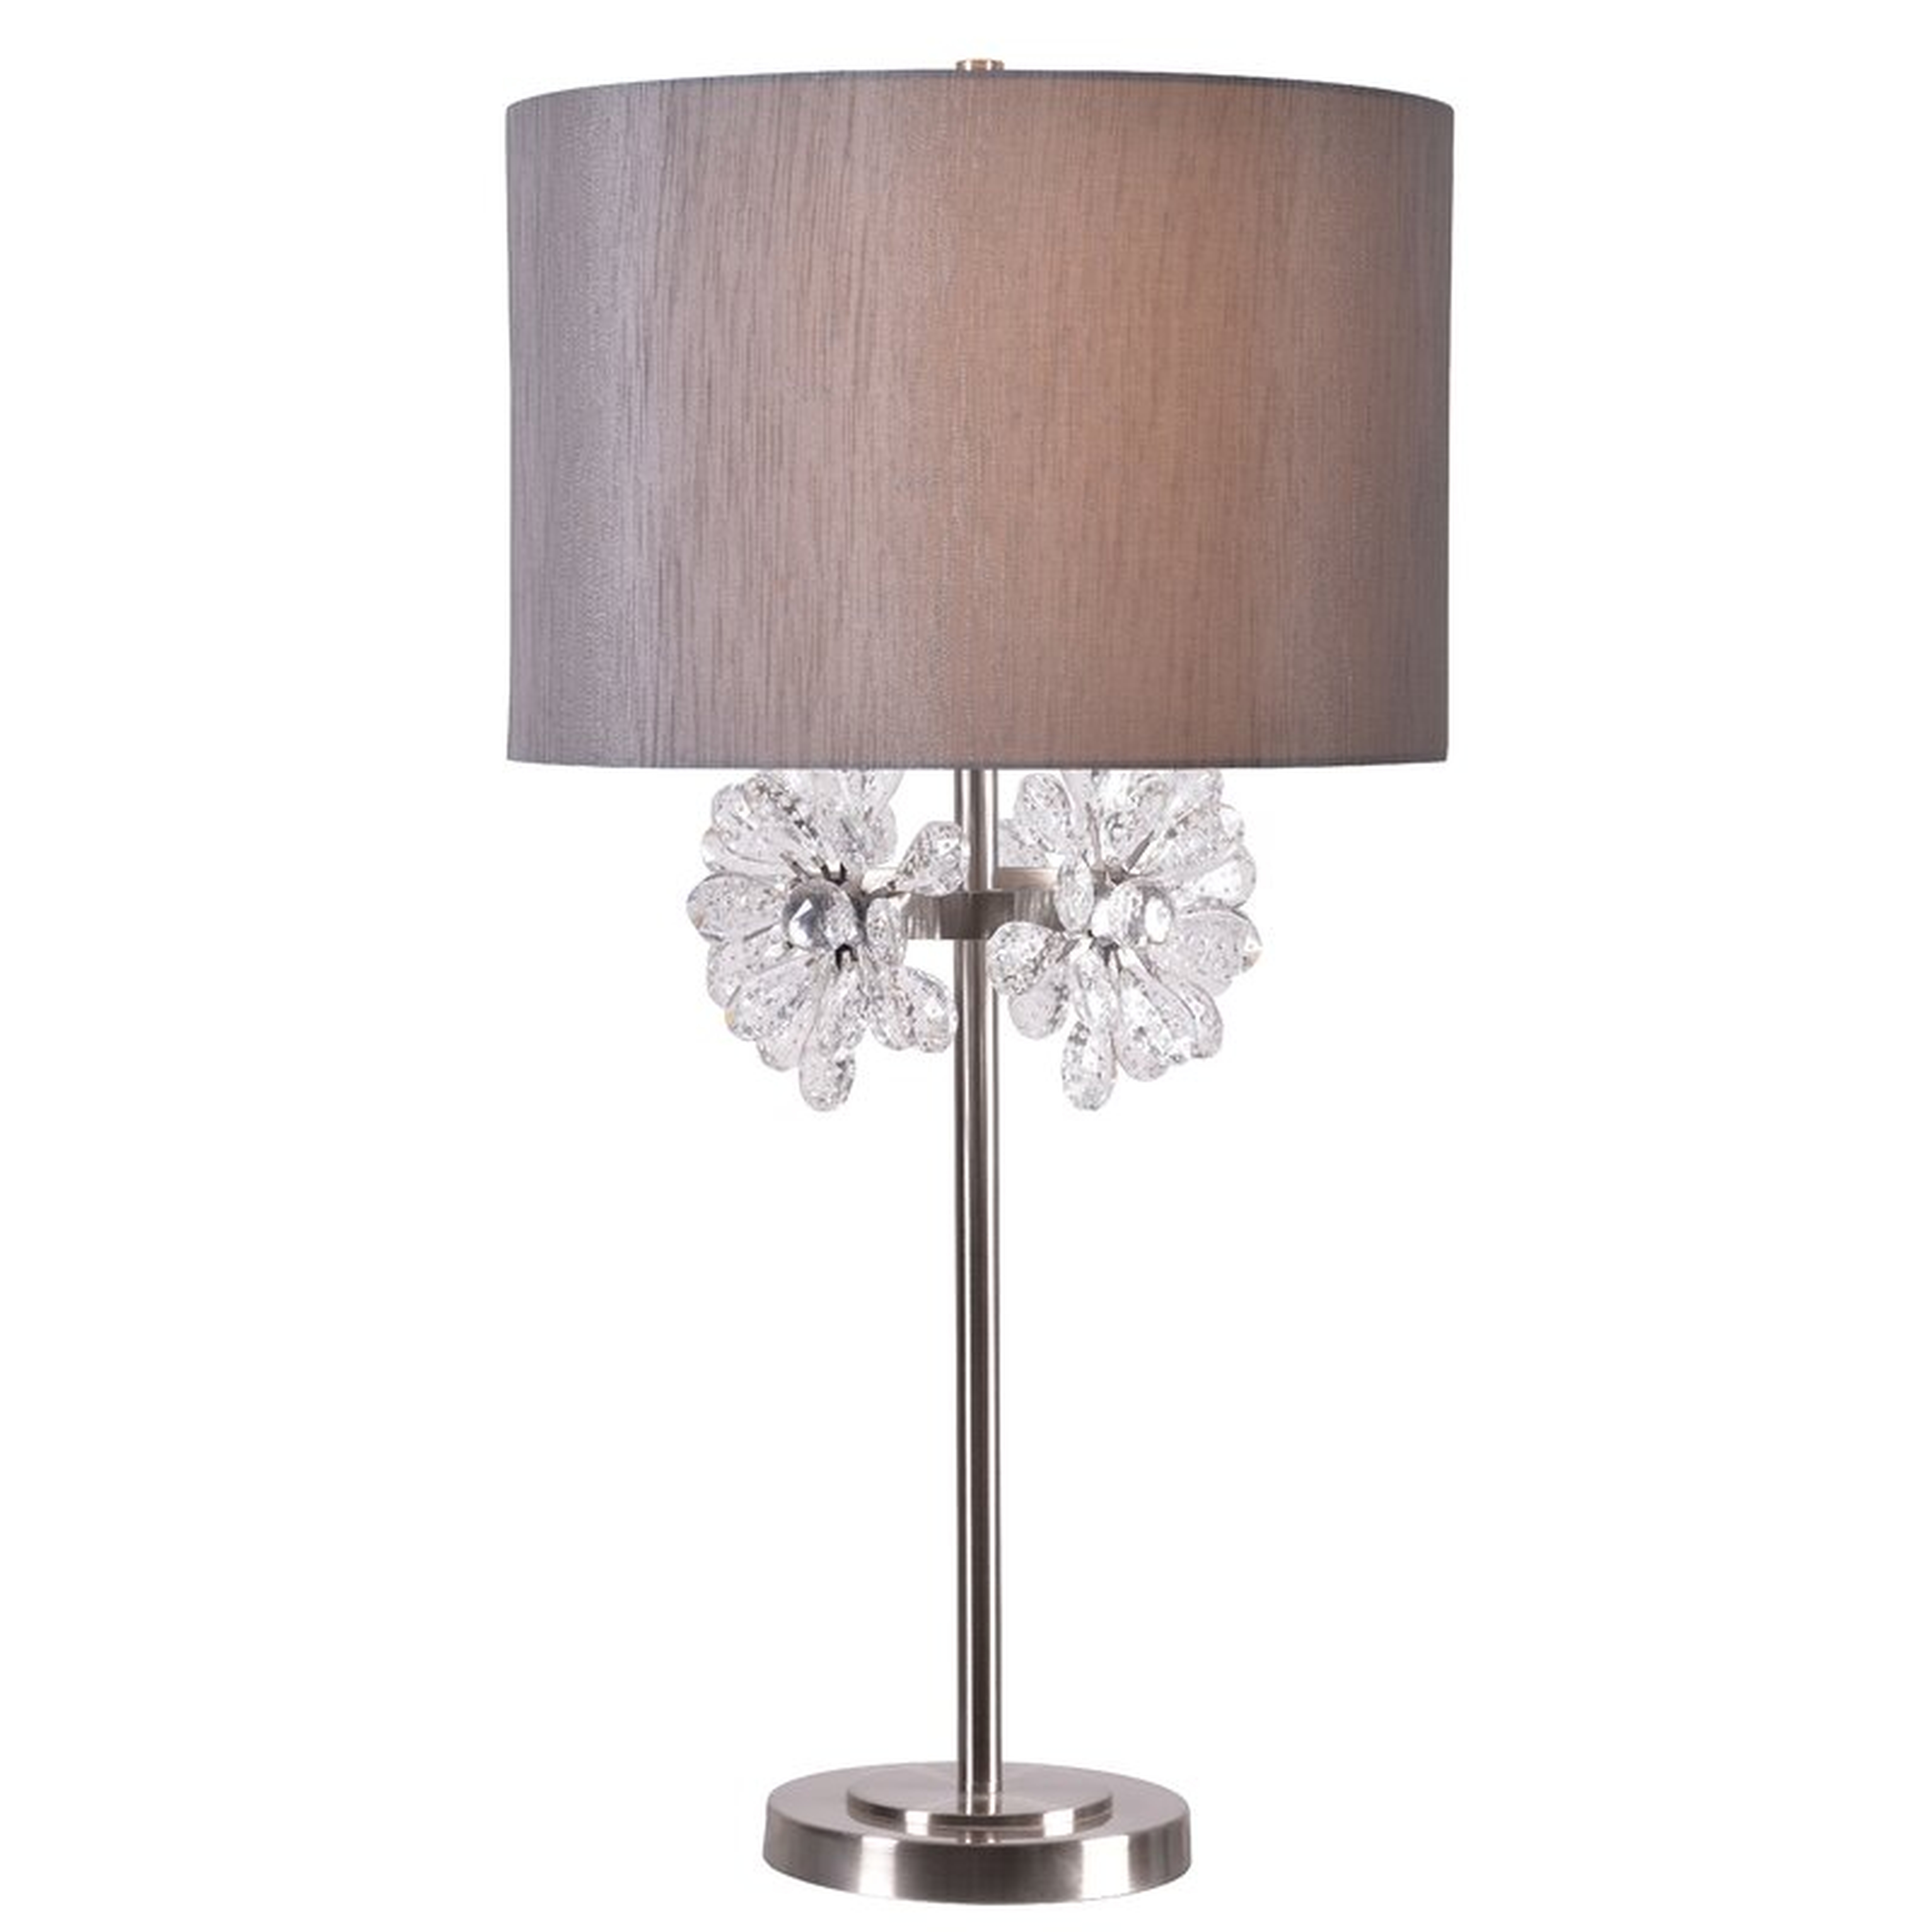 Griggs 30" Table Lamp - Wayfair